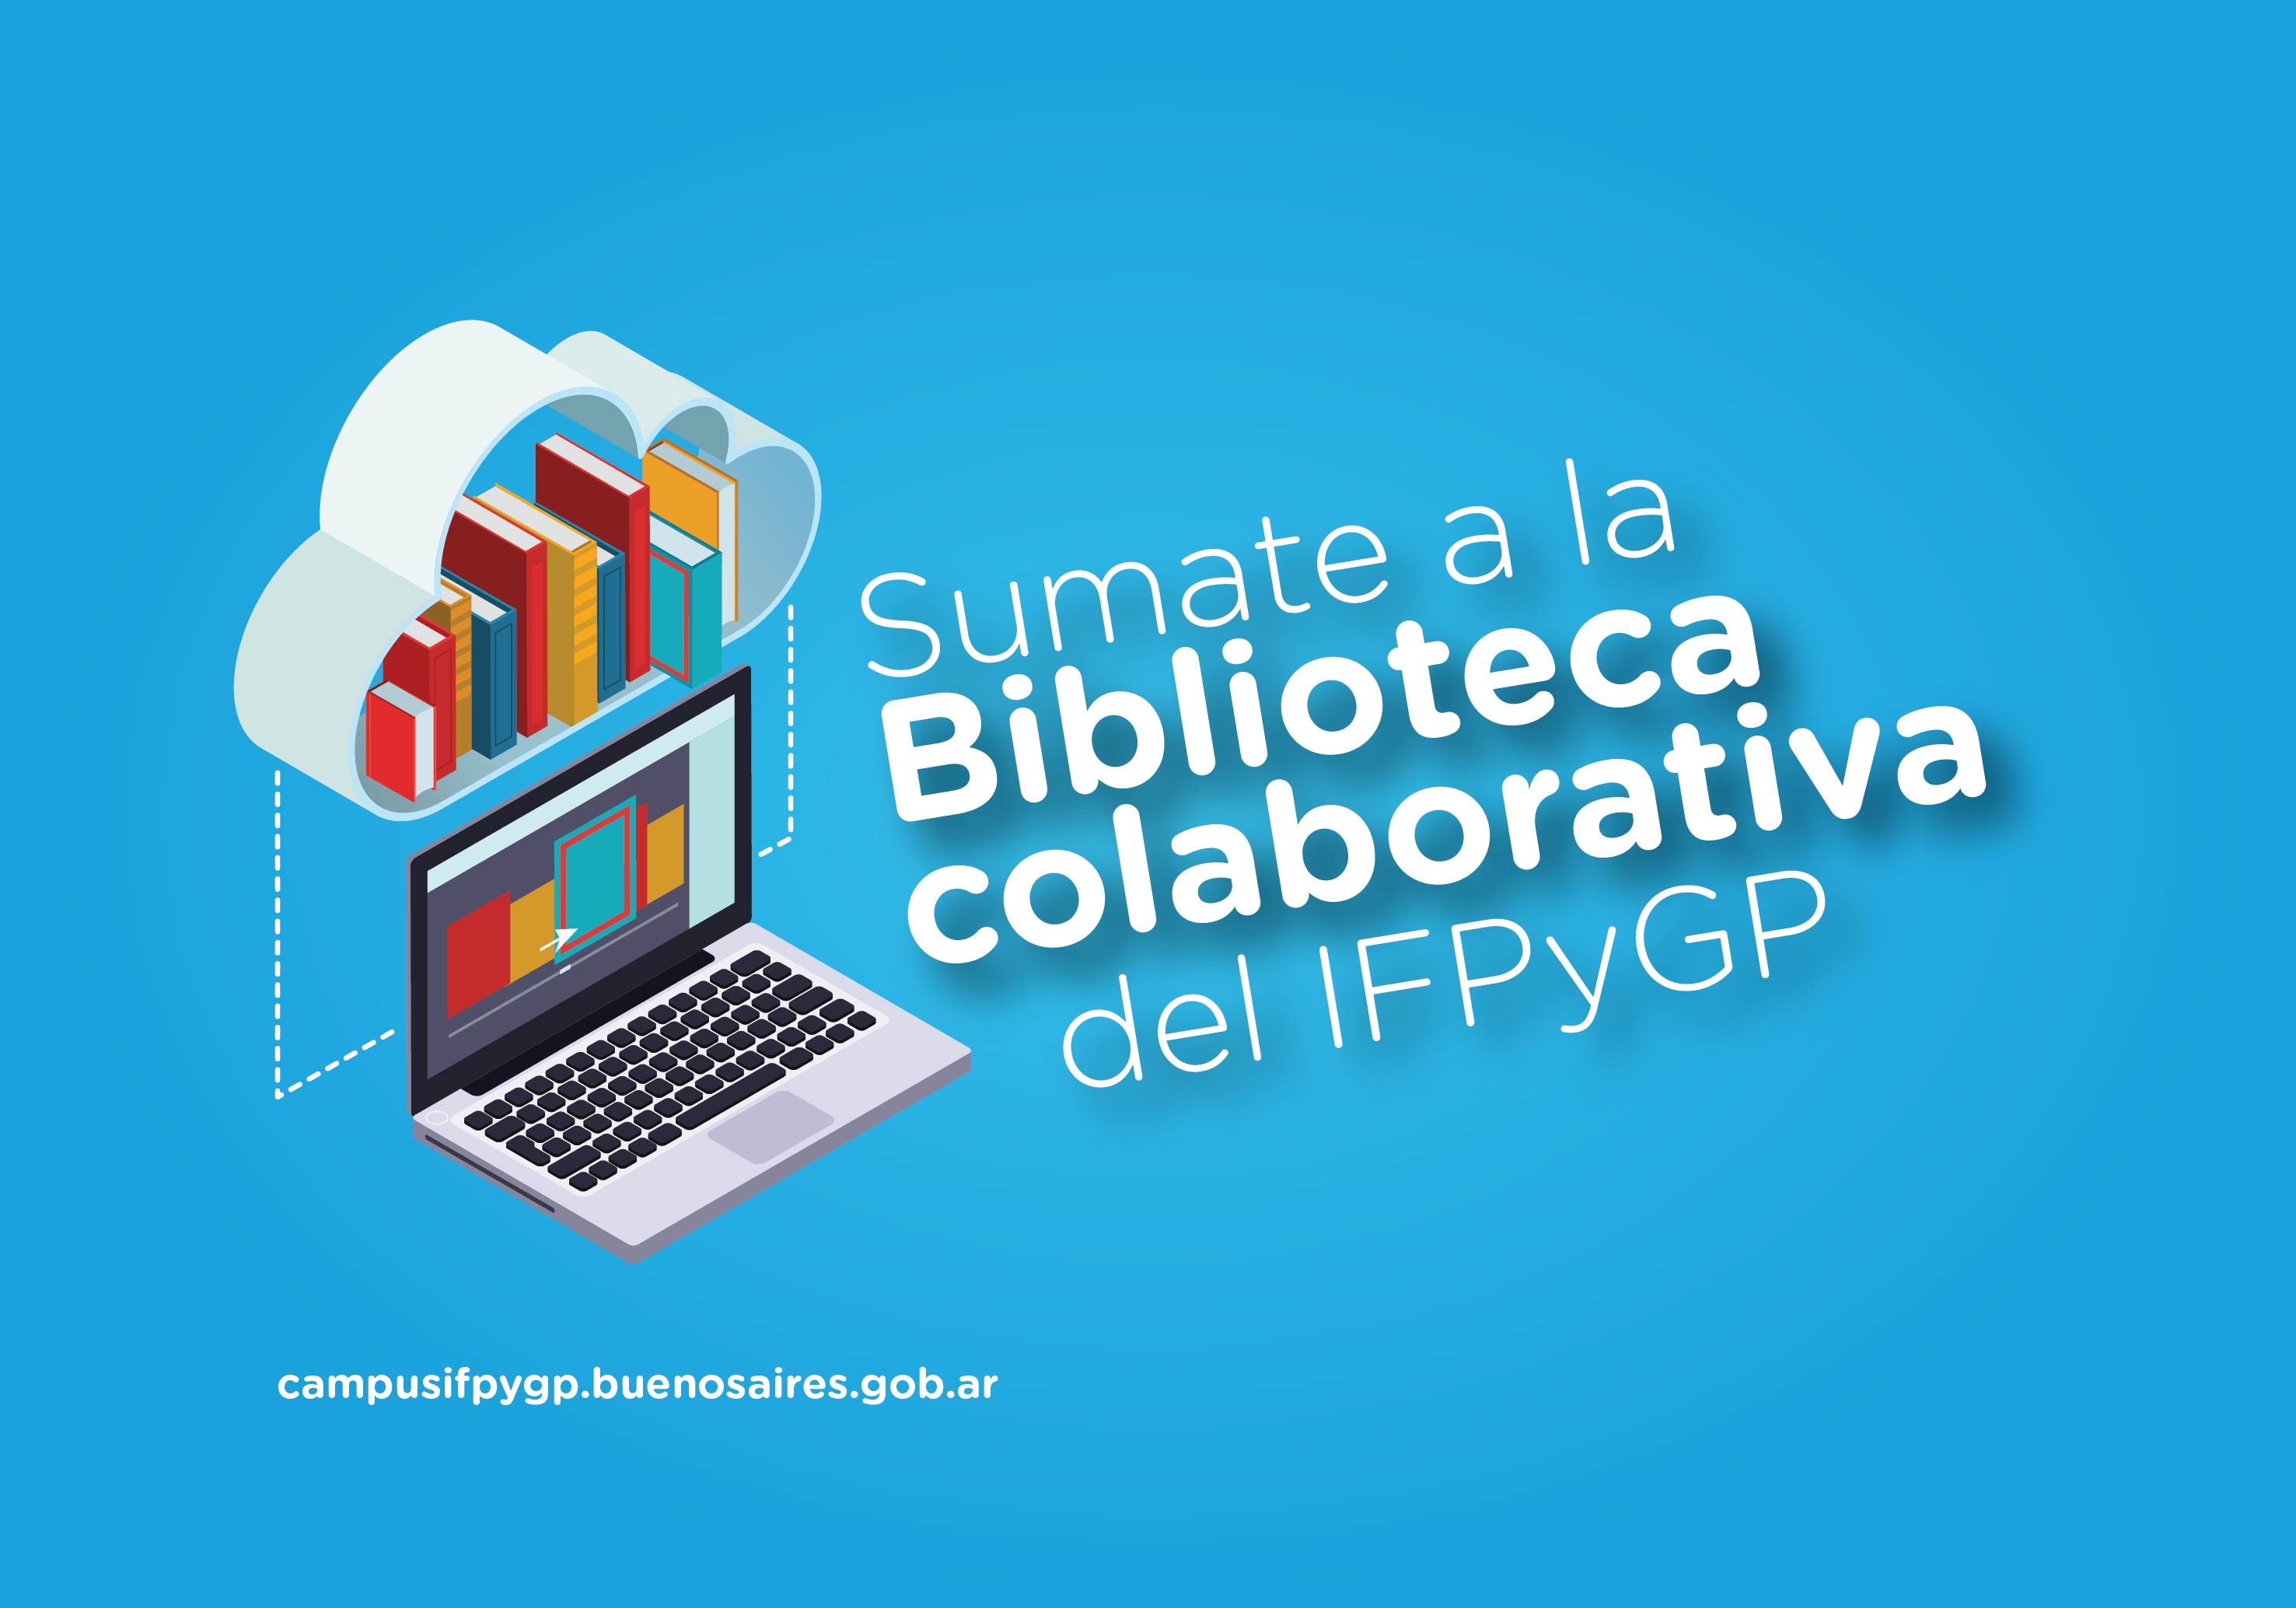 Nueva Biblioteca colaborativa del IFPyGP